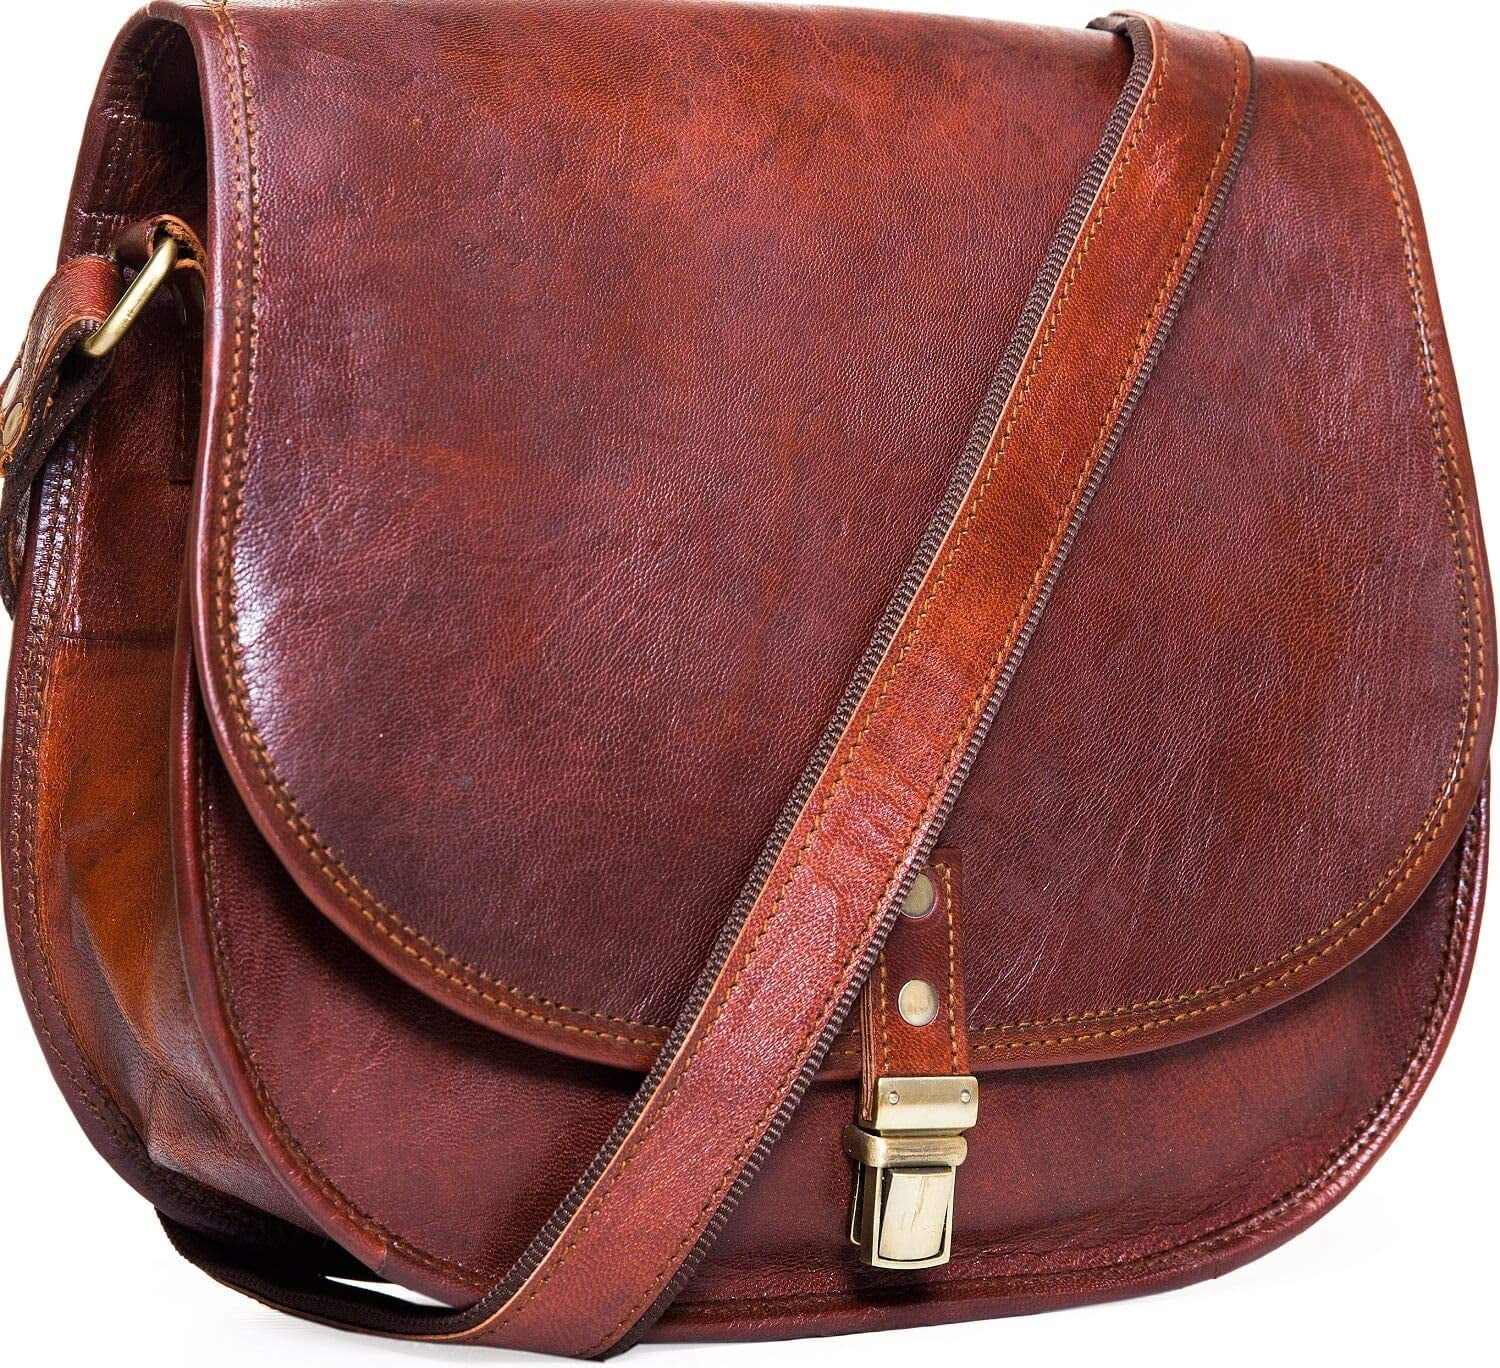 Leather Messenger Handbag Crossbody Tote Shoulder Bag Satchel For Women or Girls 